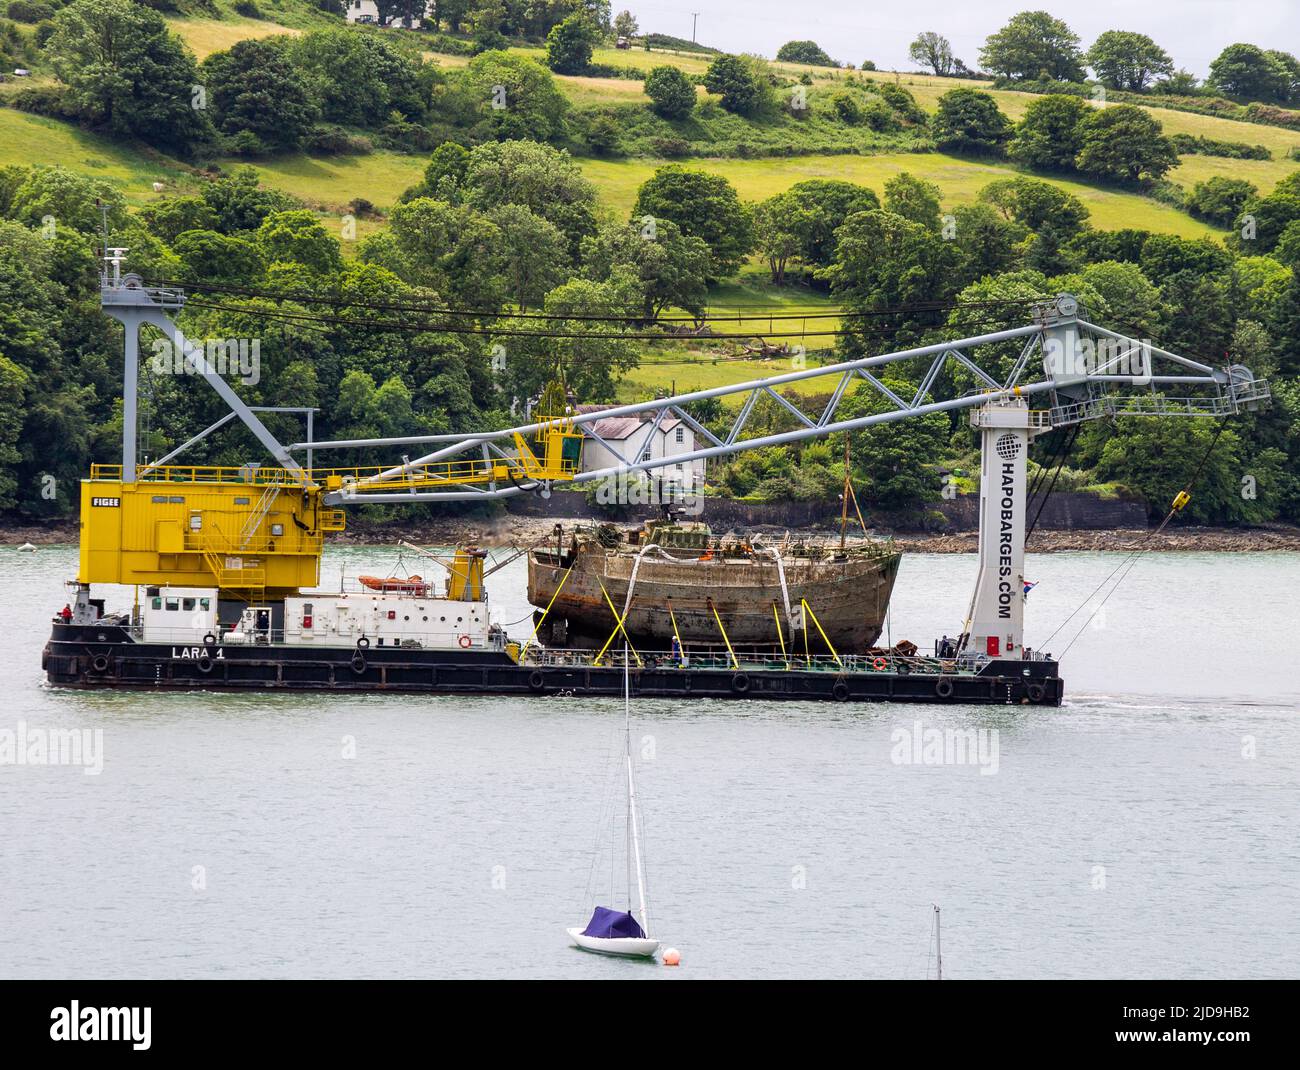 Naufragio del arrastrero en la cubierta de los buques grúa de elevación Lara 1 en el puerto de Glandore, West Cork, Irlanda Foto de stock